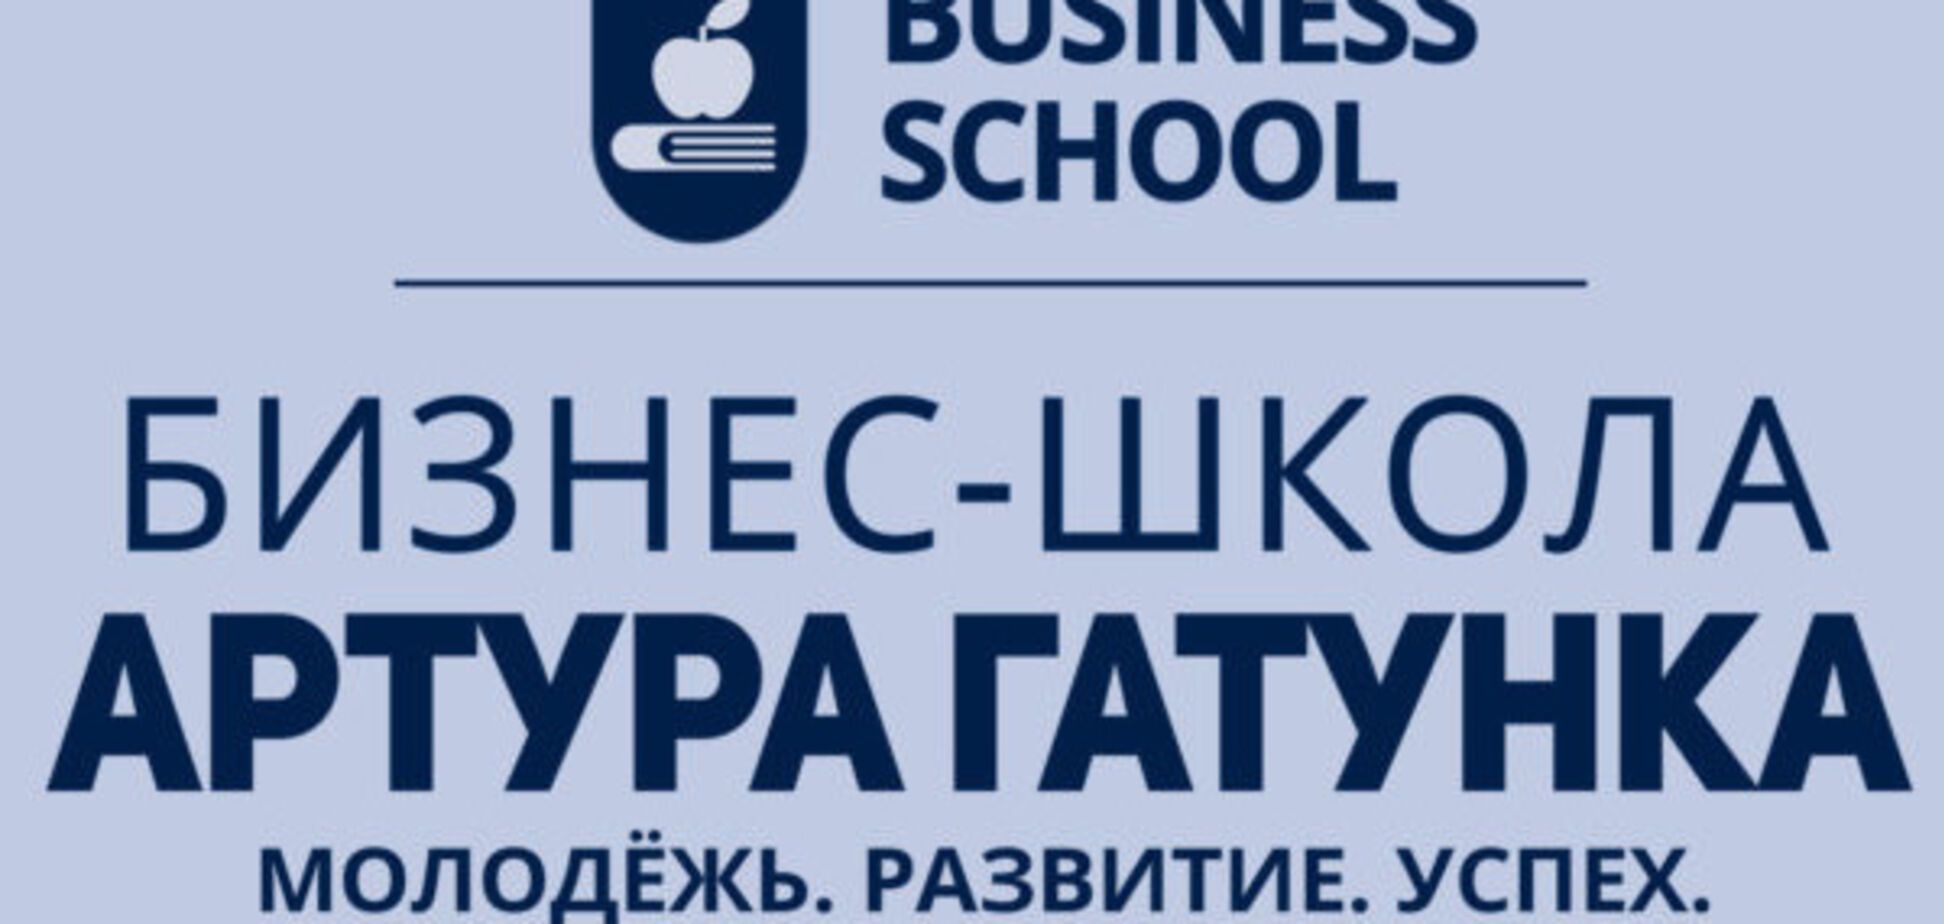 Запорожская молодежь активно регистрируется для участия в 'Бизнес-школу Артура Гатунка'